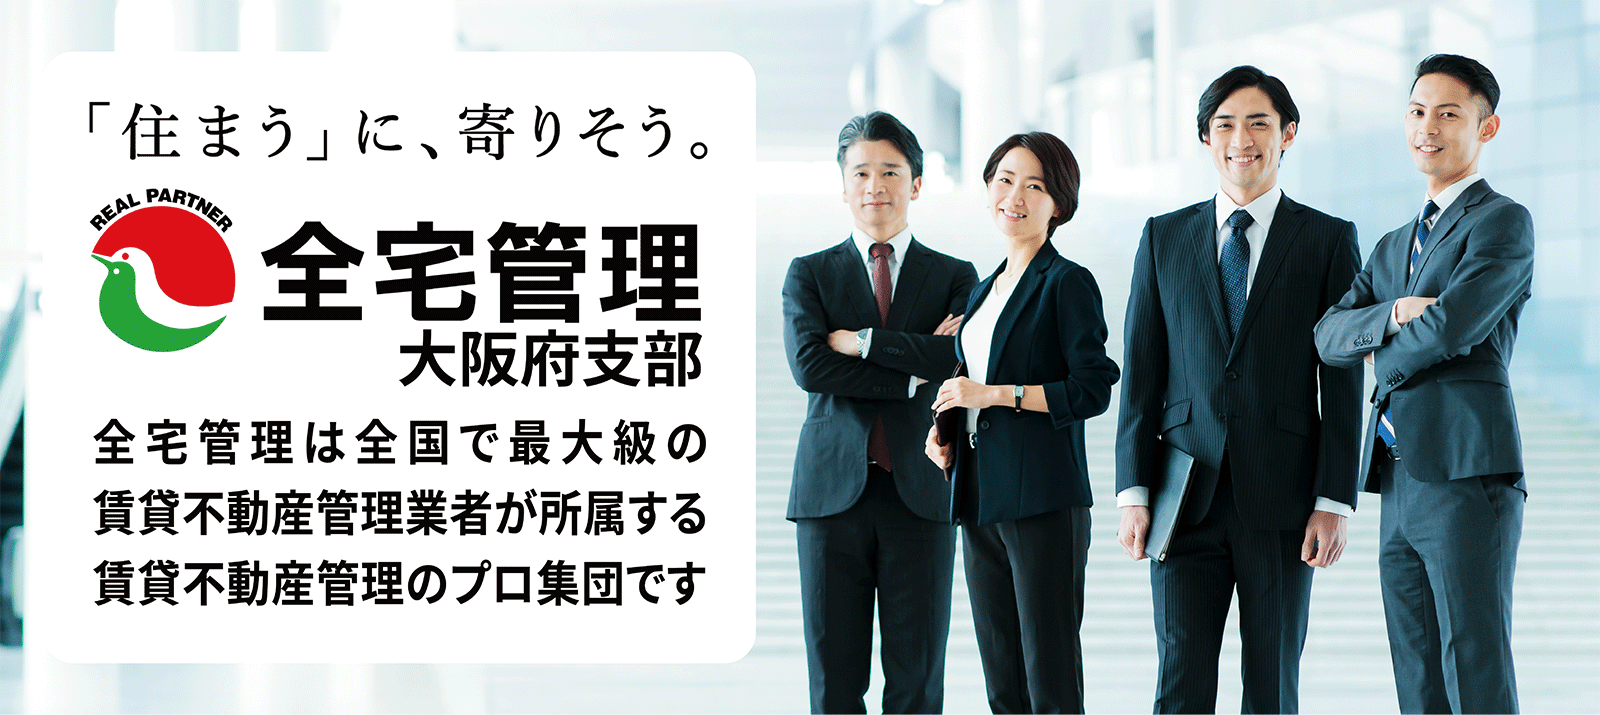 「住まう」に、寄りそう。全宅管理大阪府支部。全宅管理は全国で最大級の賃貸不動産管理業者が所属する賃貸不動産管理のプロ集団です。